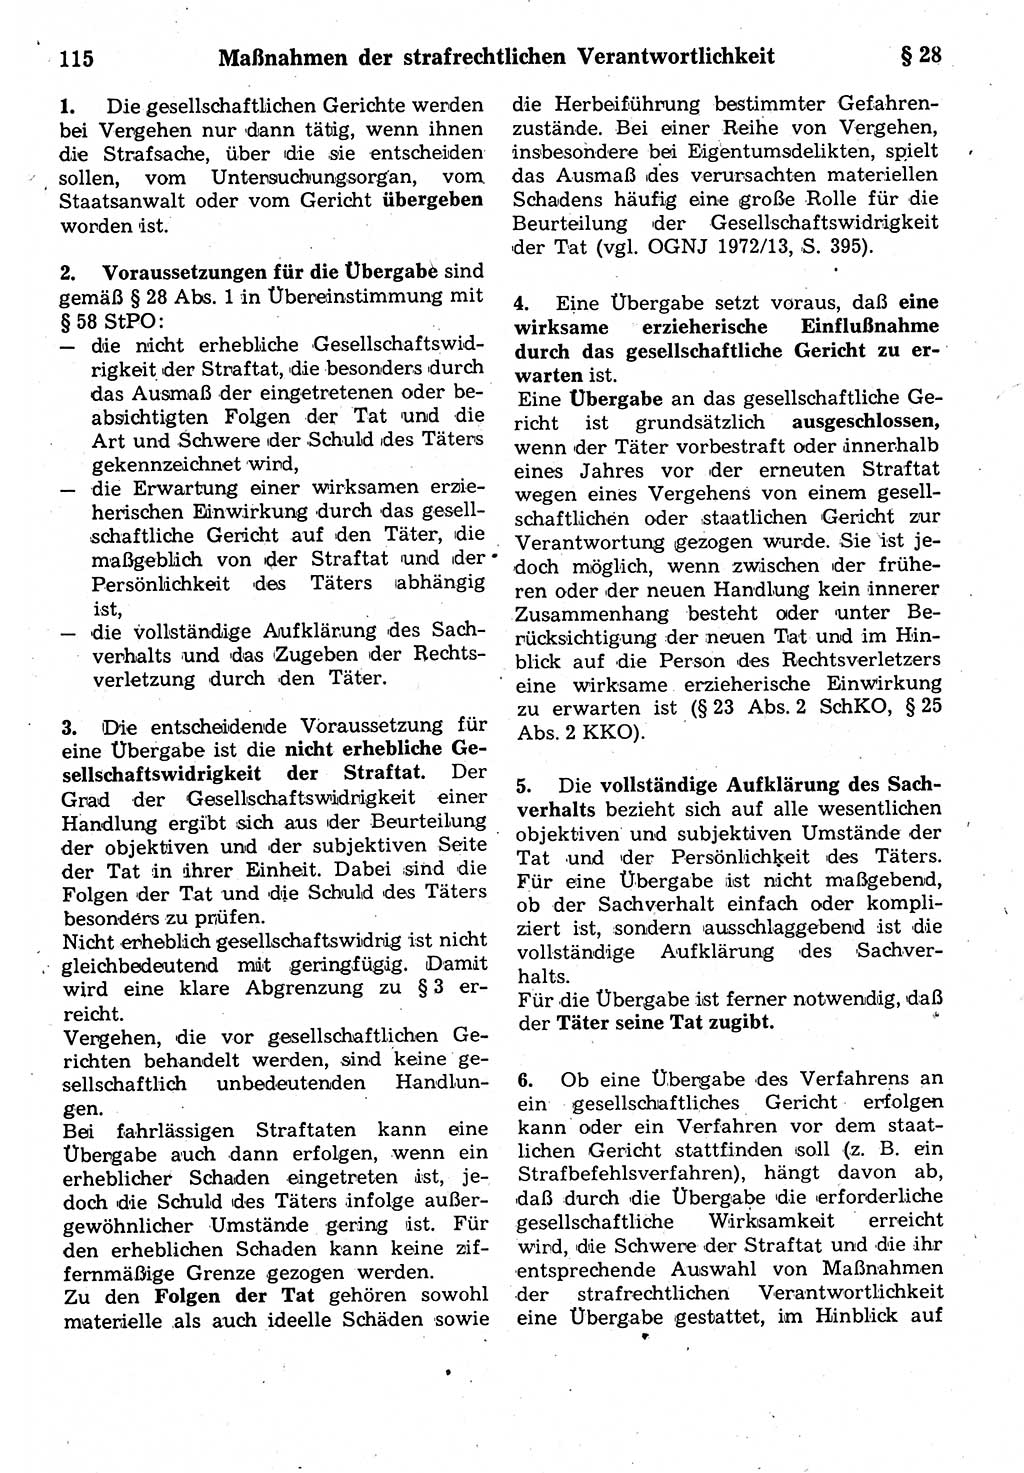 Strafrecht der Deutschen Demokratischen Republik (DDR), Kommentar zum Strafgesetzbuch (StGB) 1987, Seite 115 (Strafr. DDR Komm. StGB 1987, S. 115)